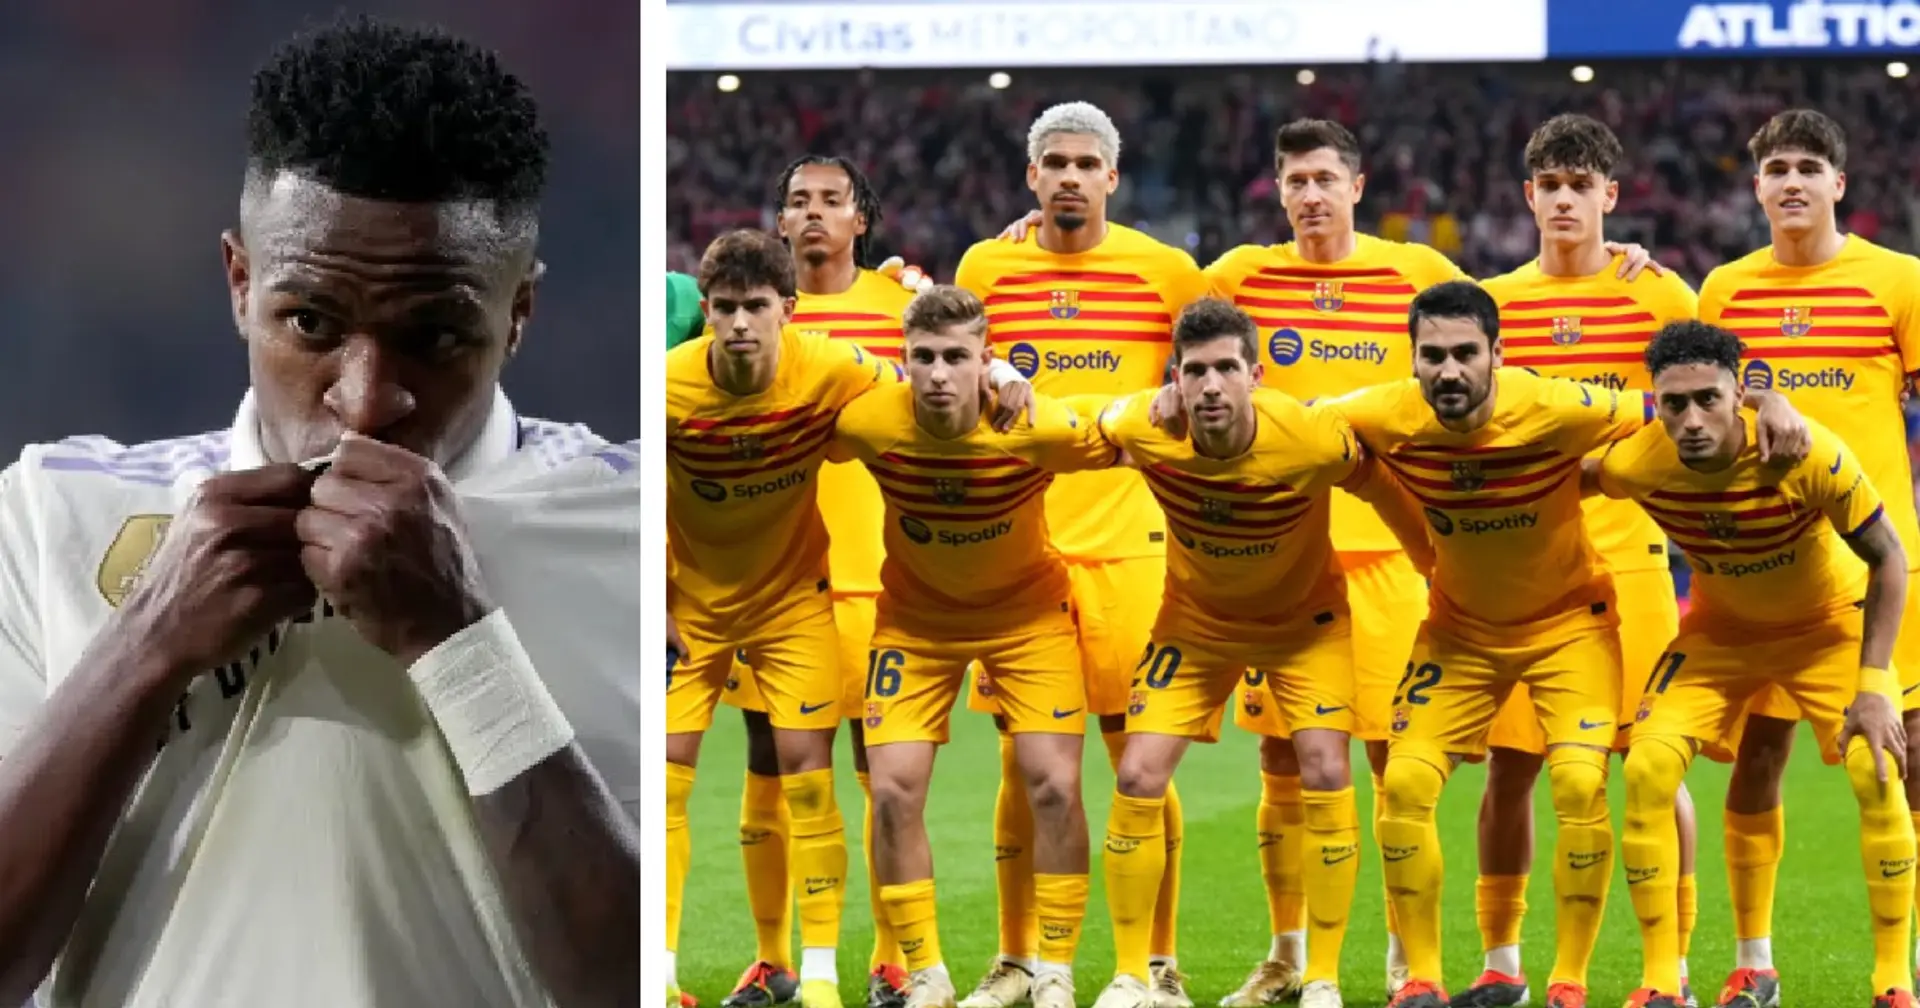 Hat Barça das Anti-Rassismus-Trikot wegen Vinicius ignoriert? Wir antworten  